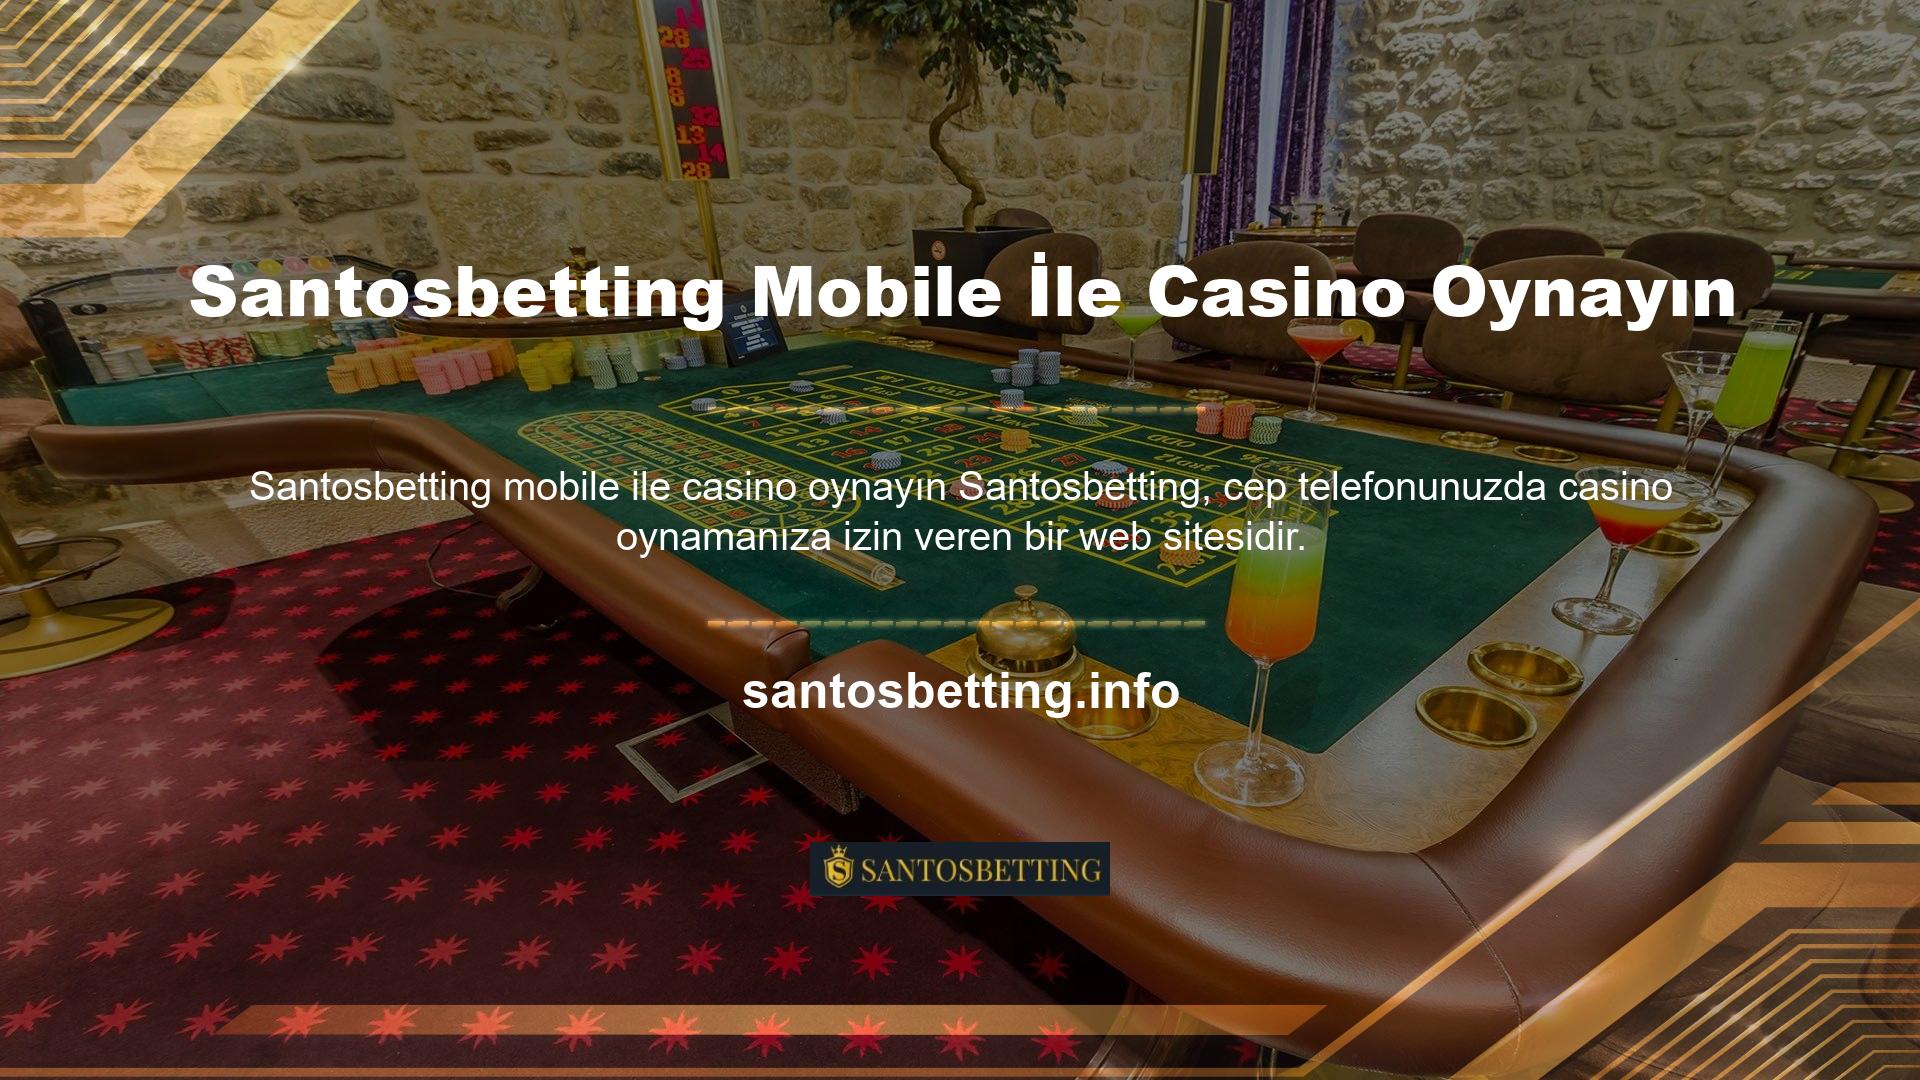 Mobil slot, mobil bakara, mobil blackjack, mobil rulet, mobil poker, mobil bingo ve mobil servet ruleti gibi tüm oyun seçenekleri cep telefonunuzdan oynanabilir